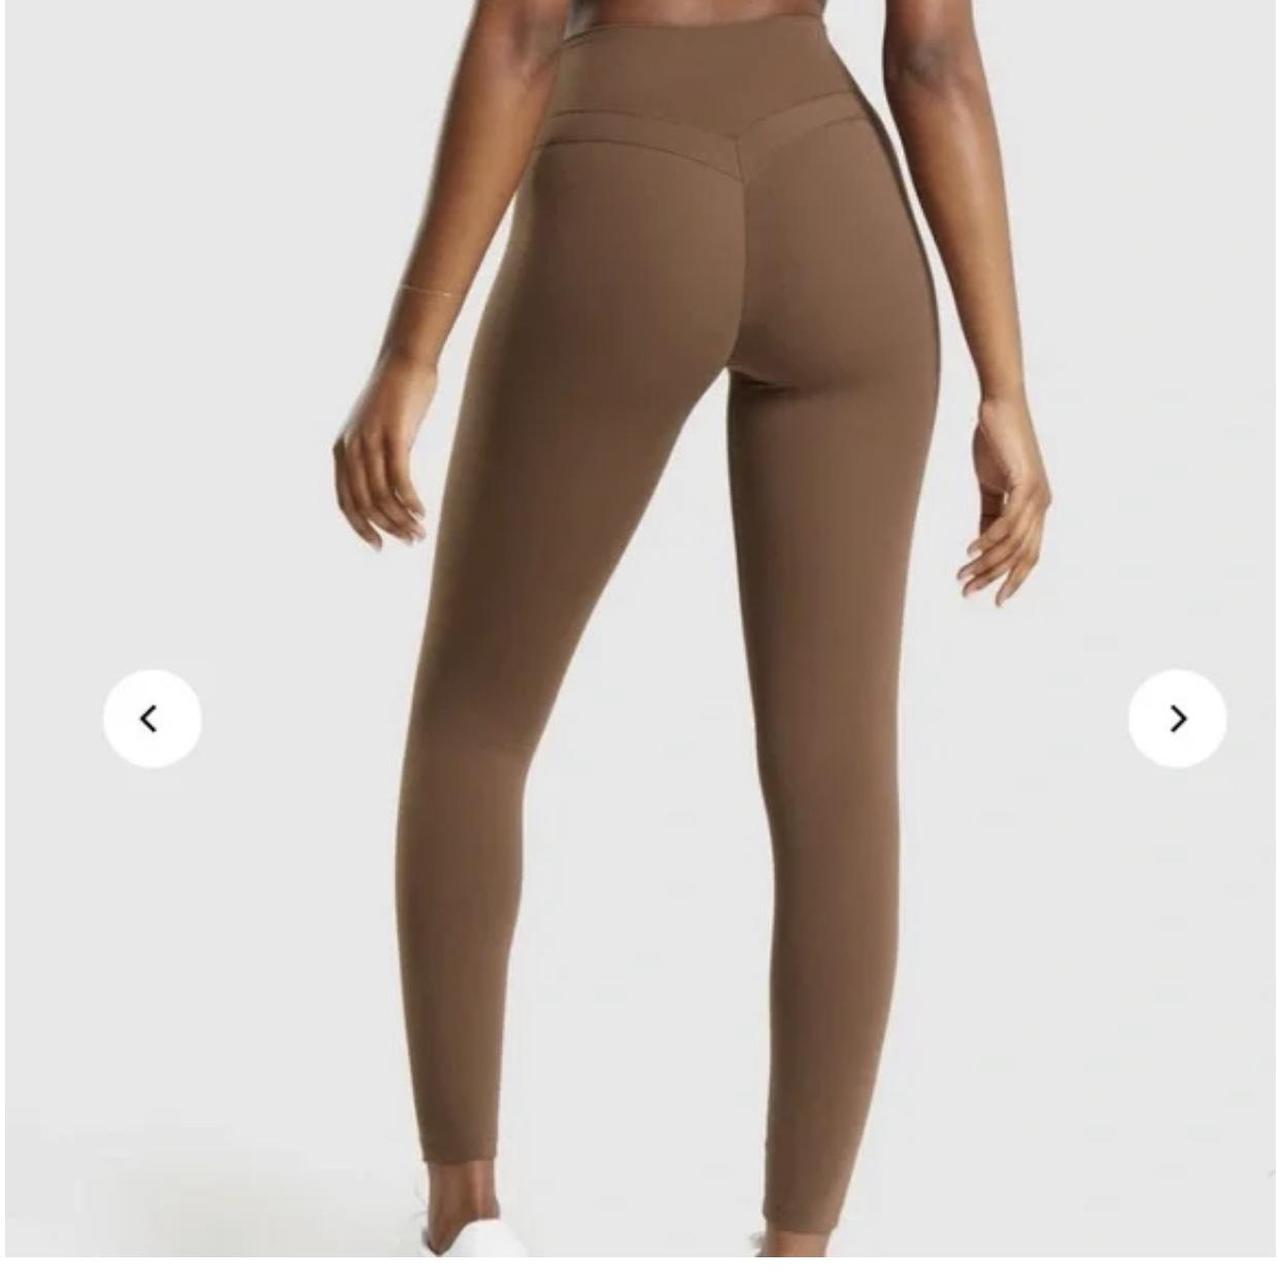 Gymshark Whitney Simmons Leggings Tan - $36 (63% Off Retail